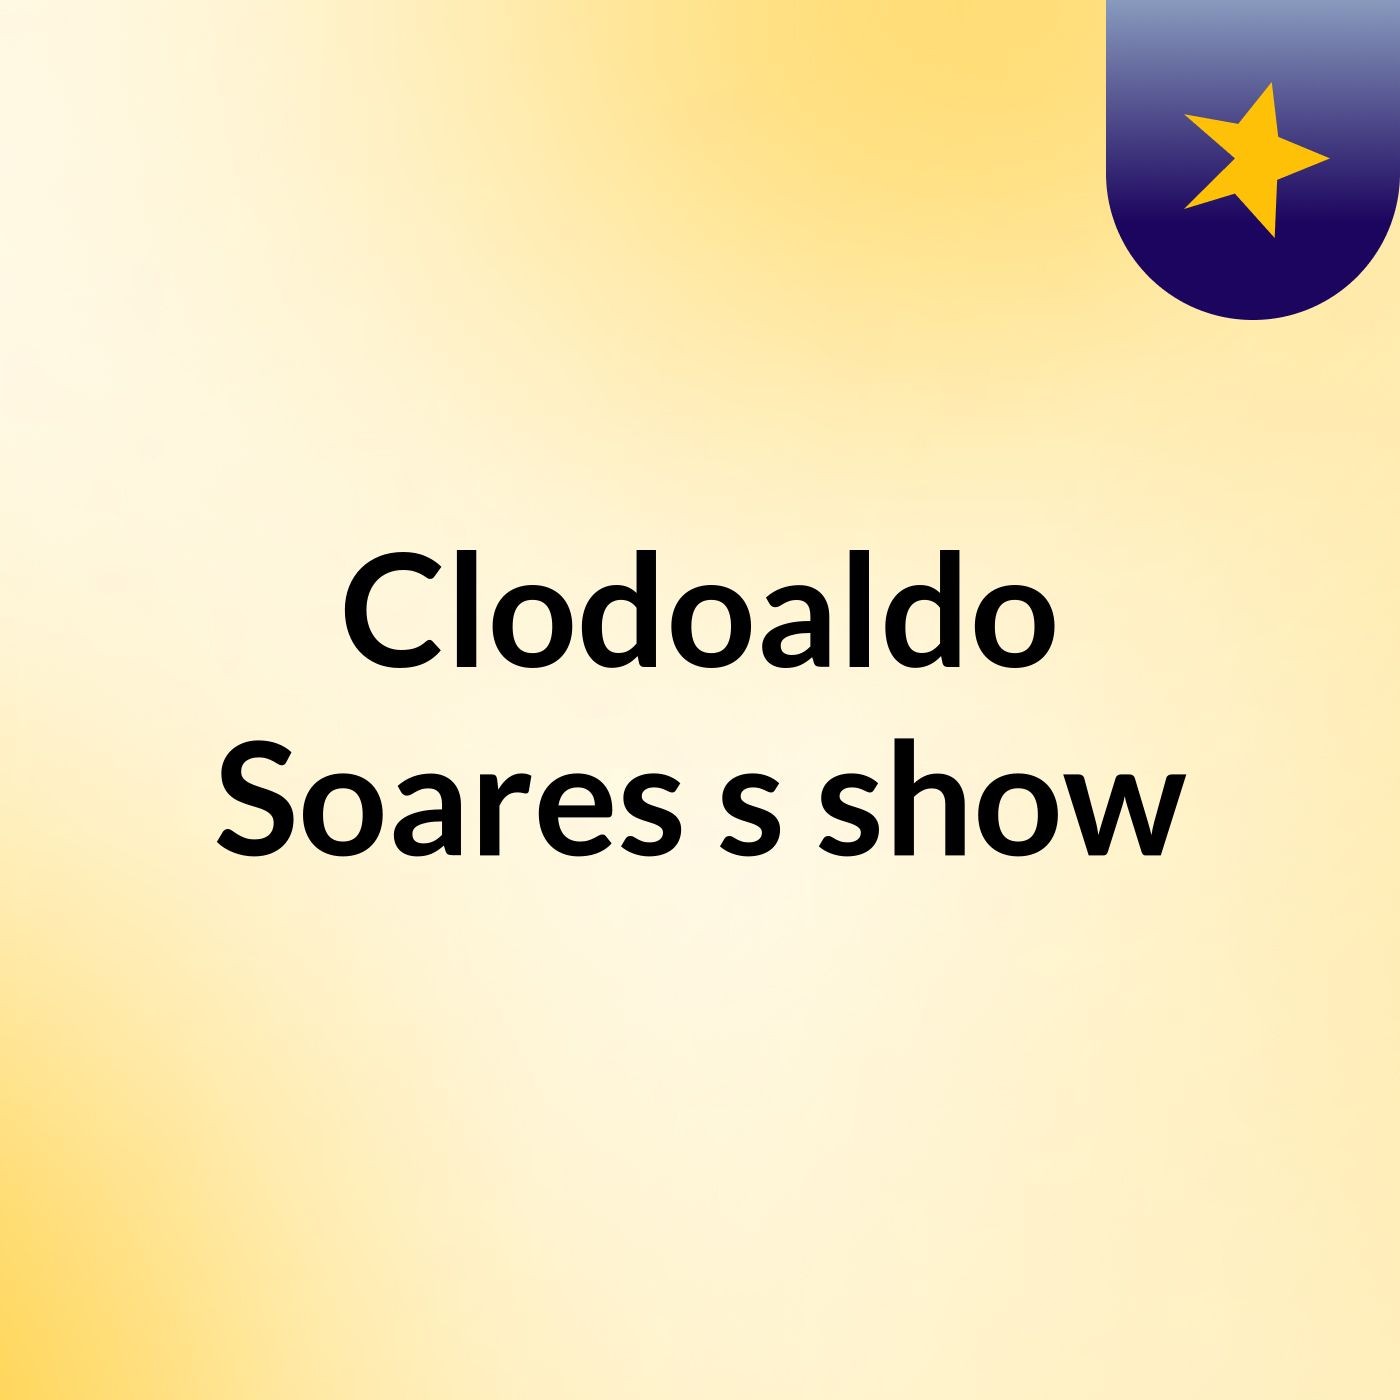 Clodoaldo Soares's show